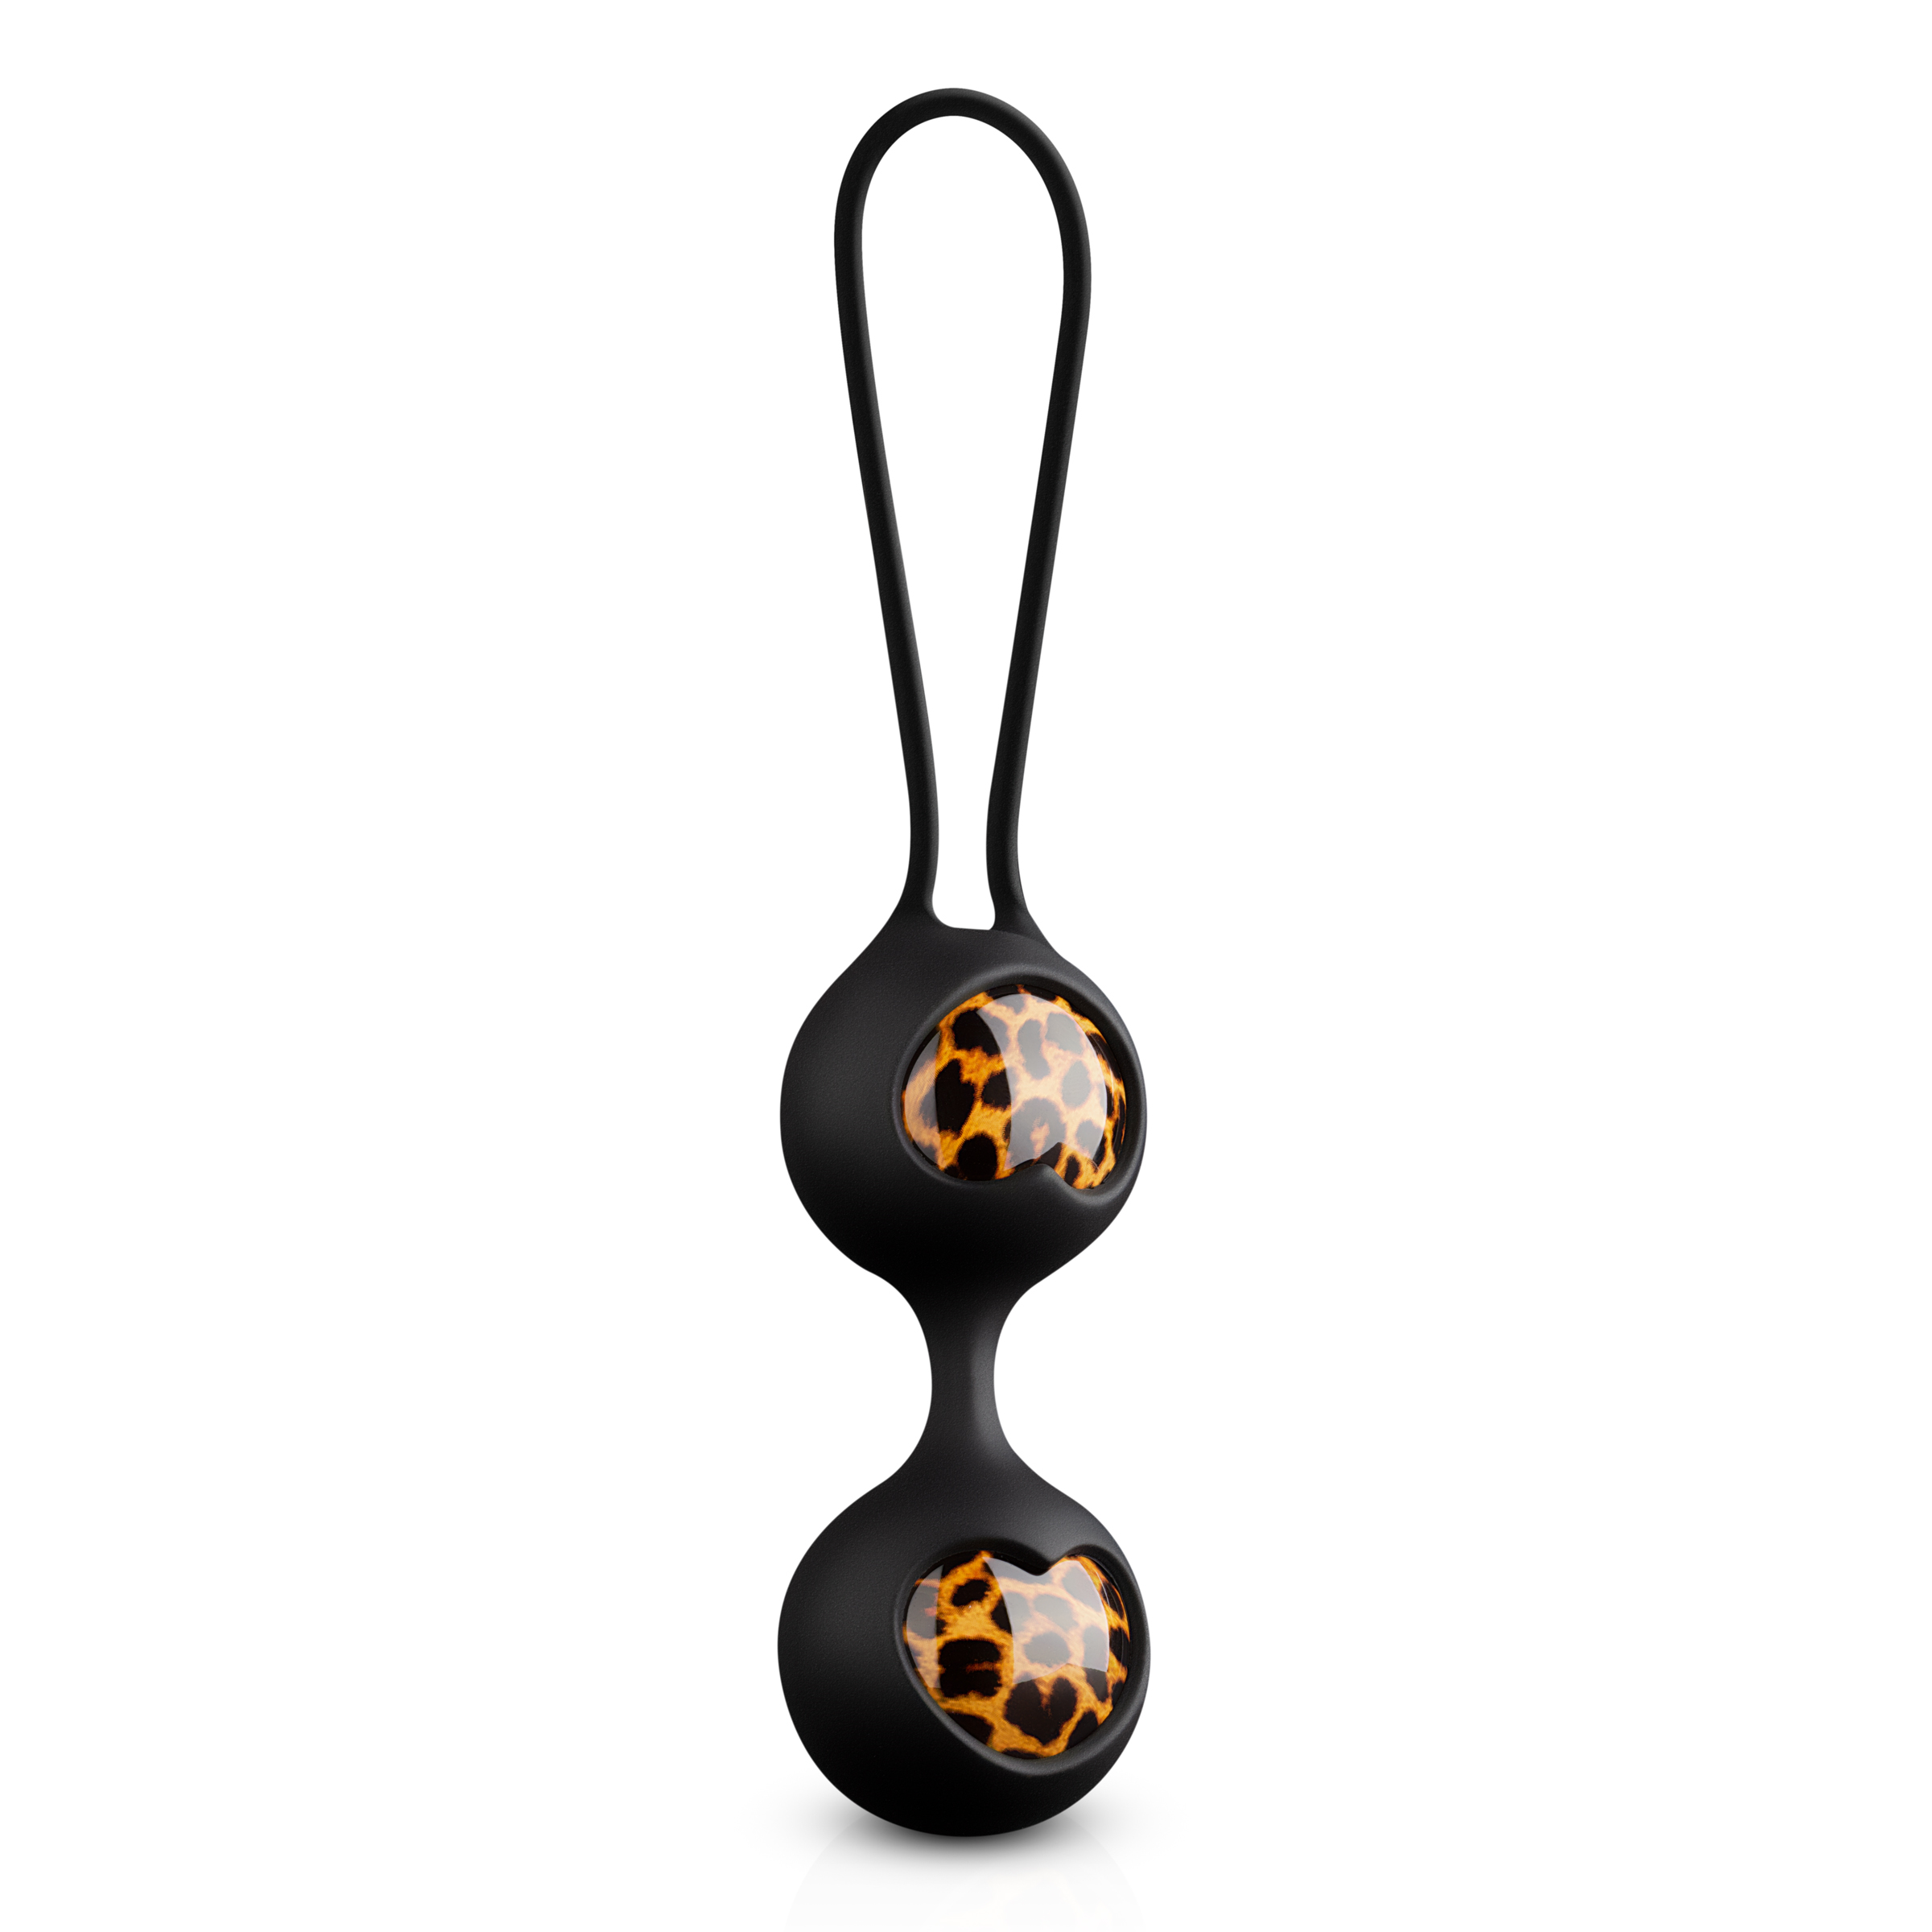 Вагинальные шарики в косметичке EDC Panthra Zane, черный/леопардовый